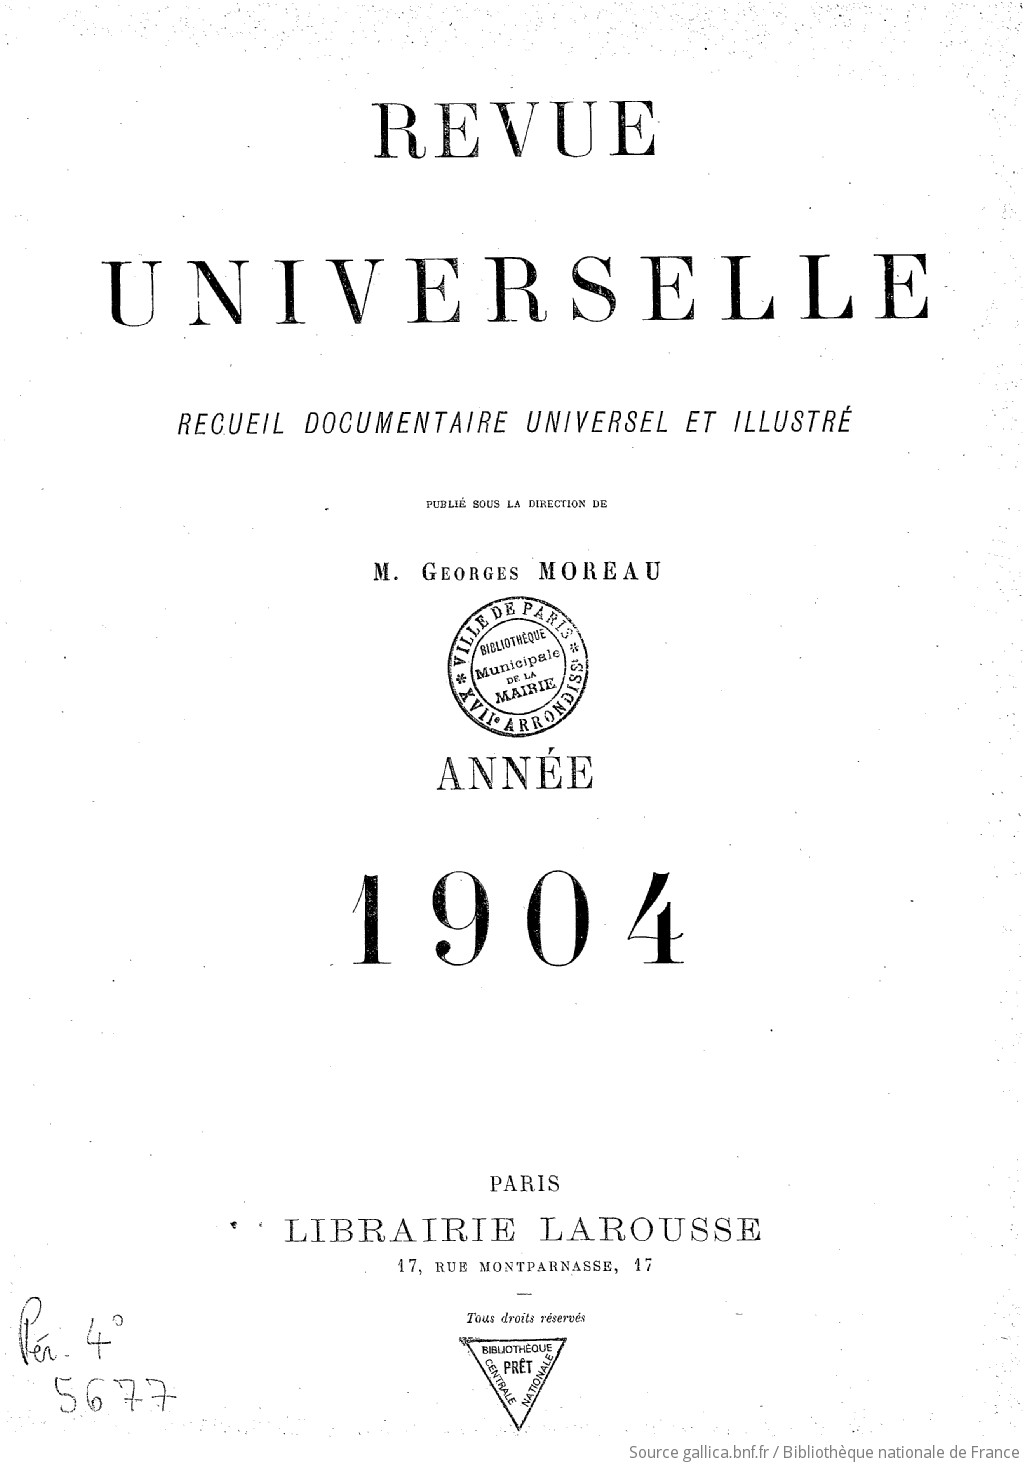 Revue universelle : recueil documentaire universel et illustré / publié sous la direction de M. Georges Moreau